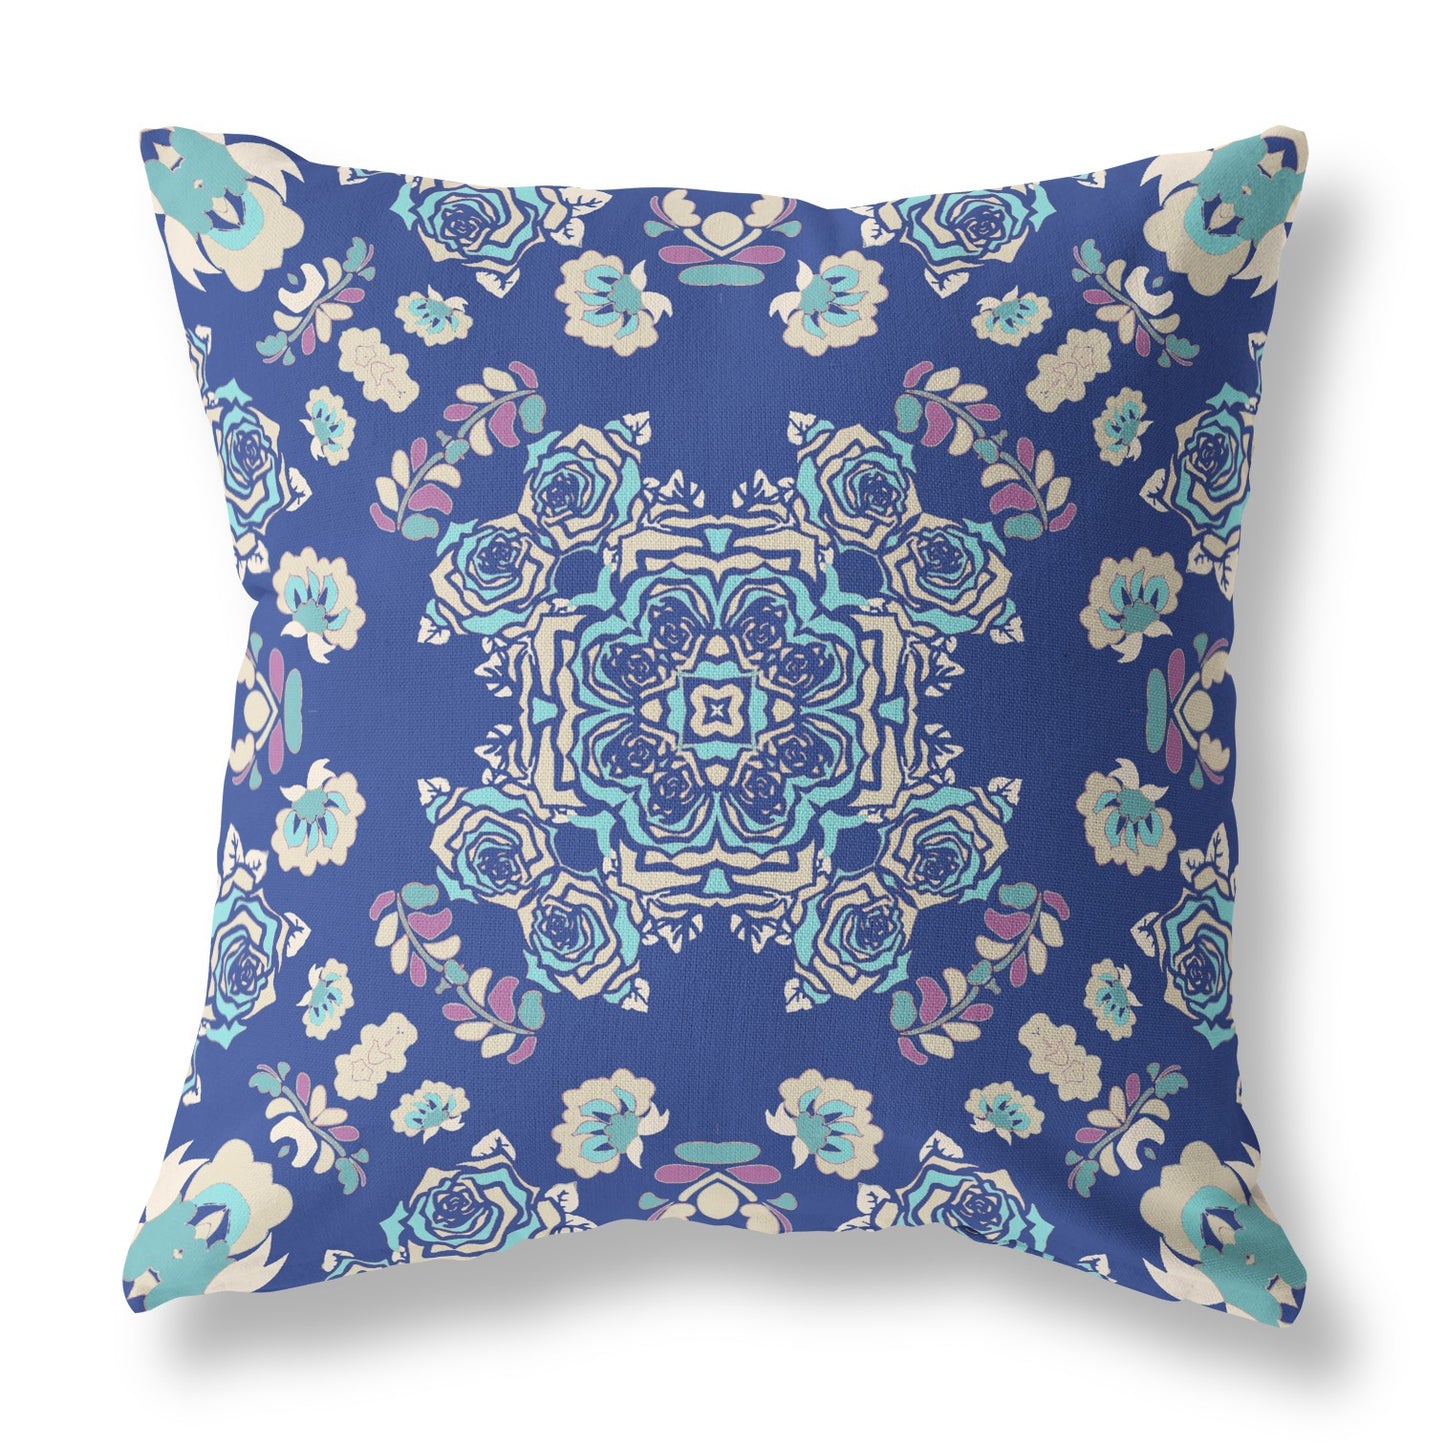 16” Blue Cream Wreath Indoor Outdoor Zippered Throw Pillow